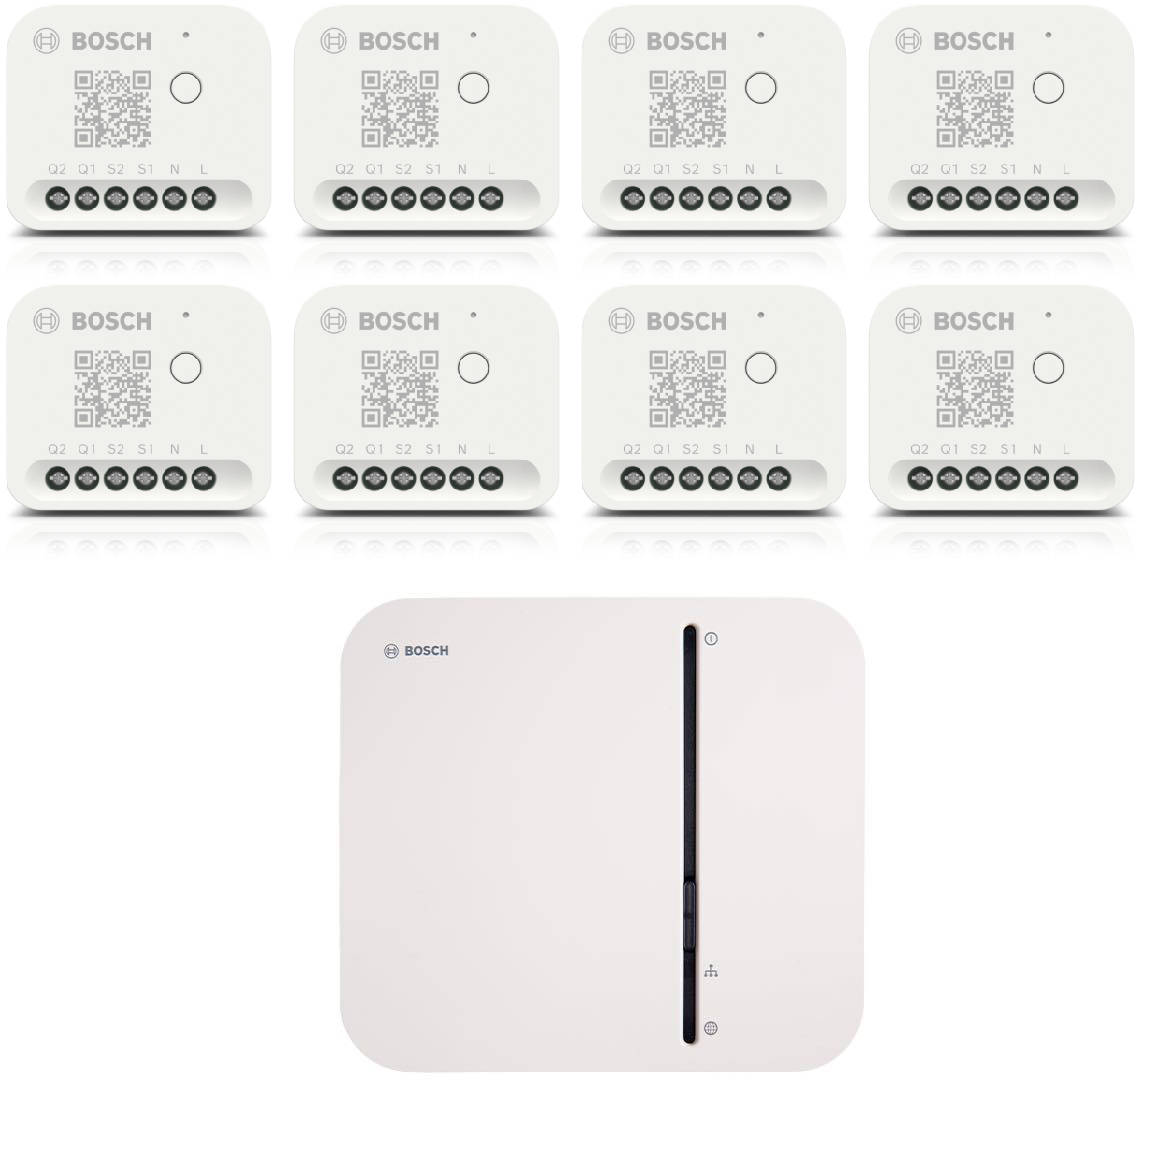 Bosch Smart Home – Starter Set Licht-/ Rollladensteuerung mit 8 Unterputz-Aktoren (Gen. 2) – Deal, Schnäppchen, sparen